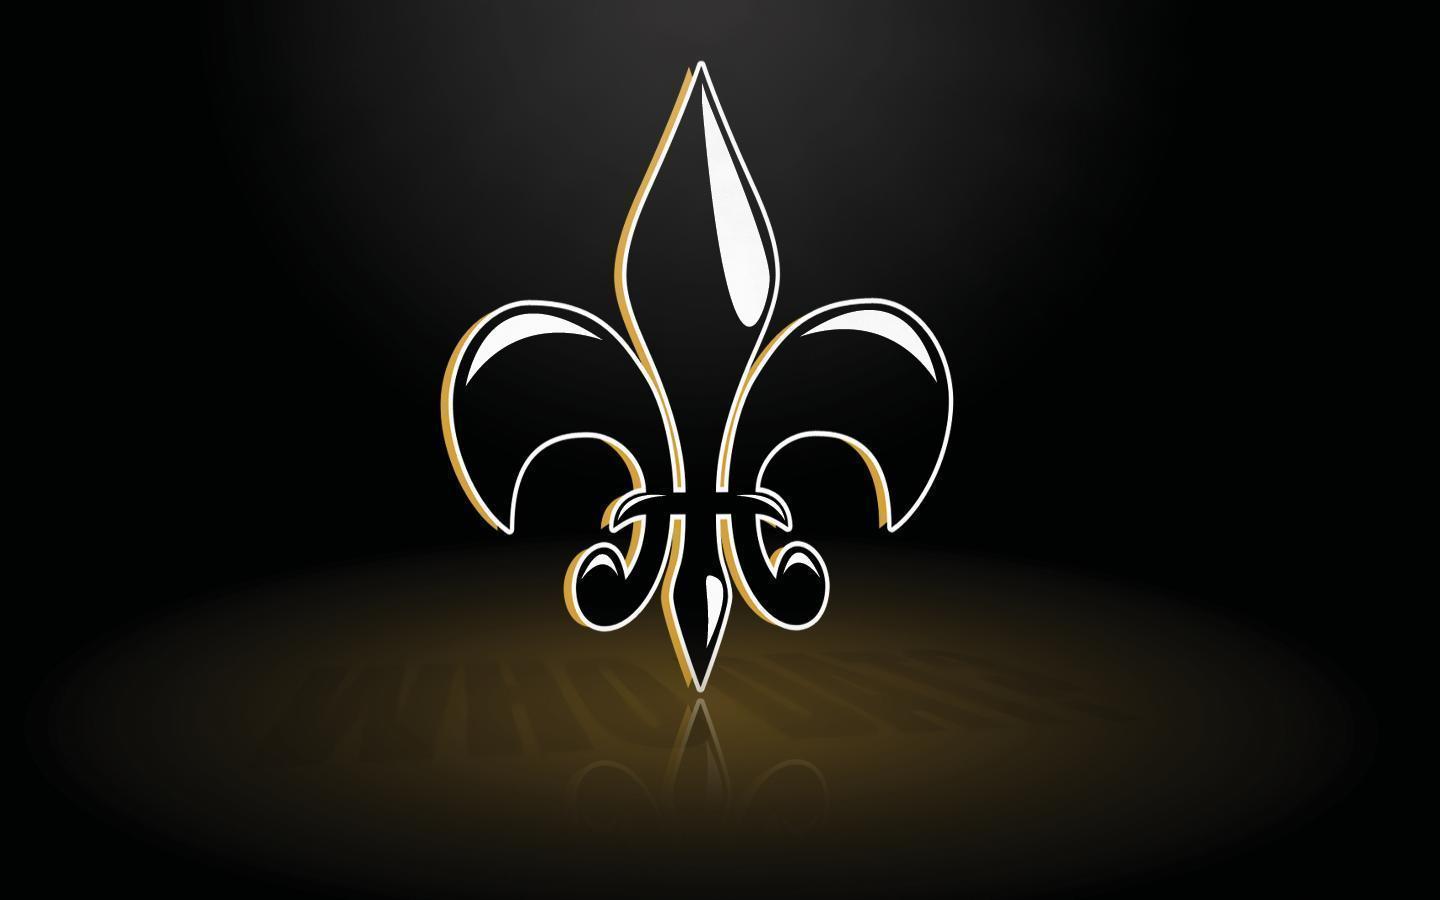 New Orleans Saints background. New Orleans Saints wallpaper